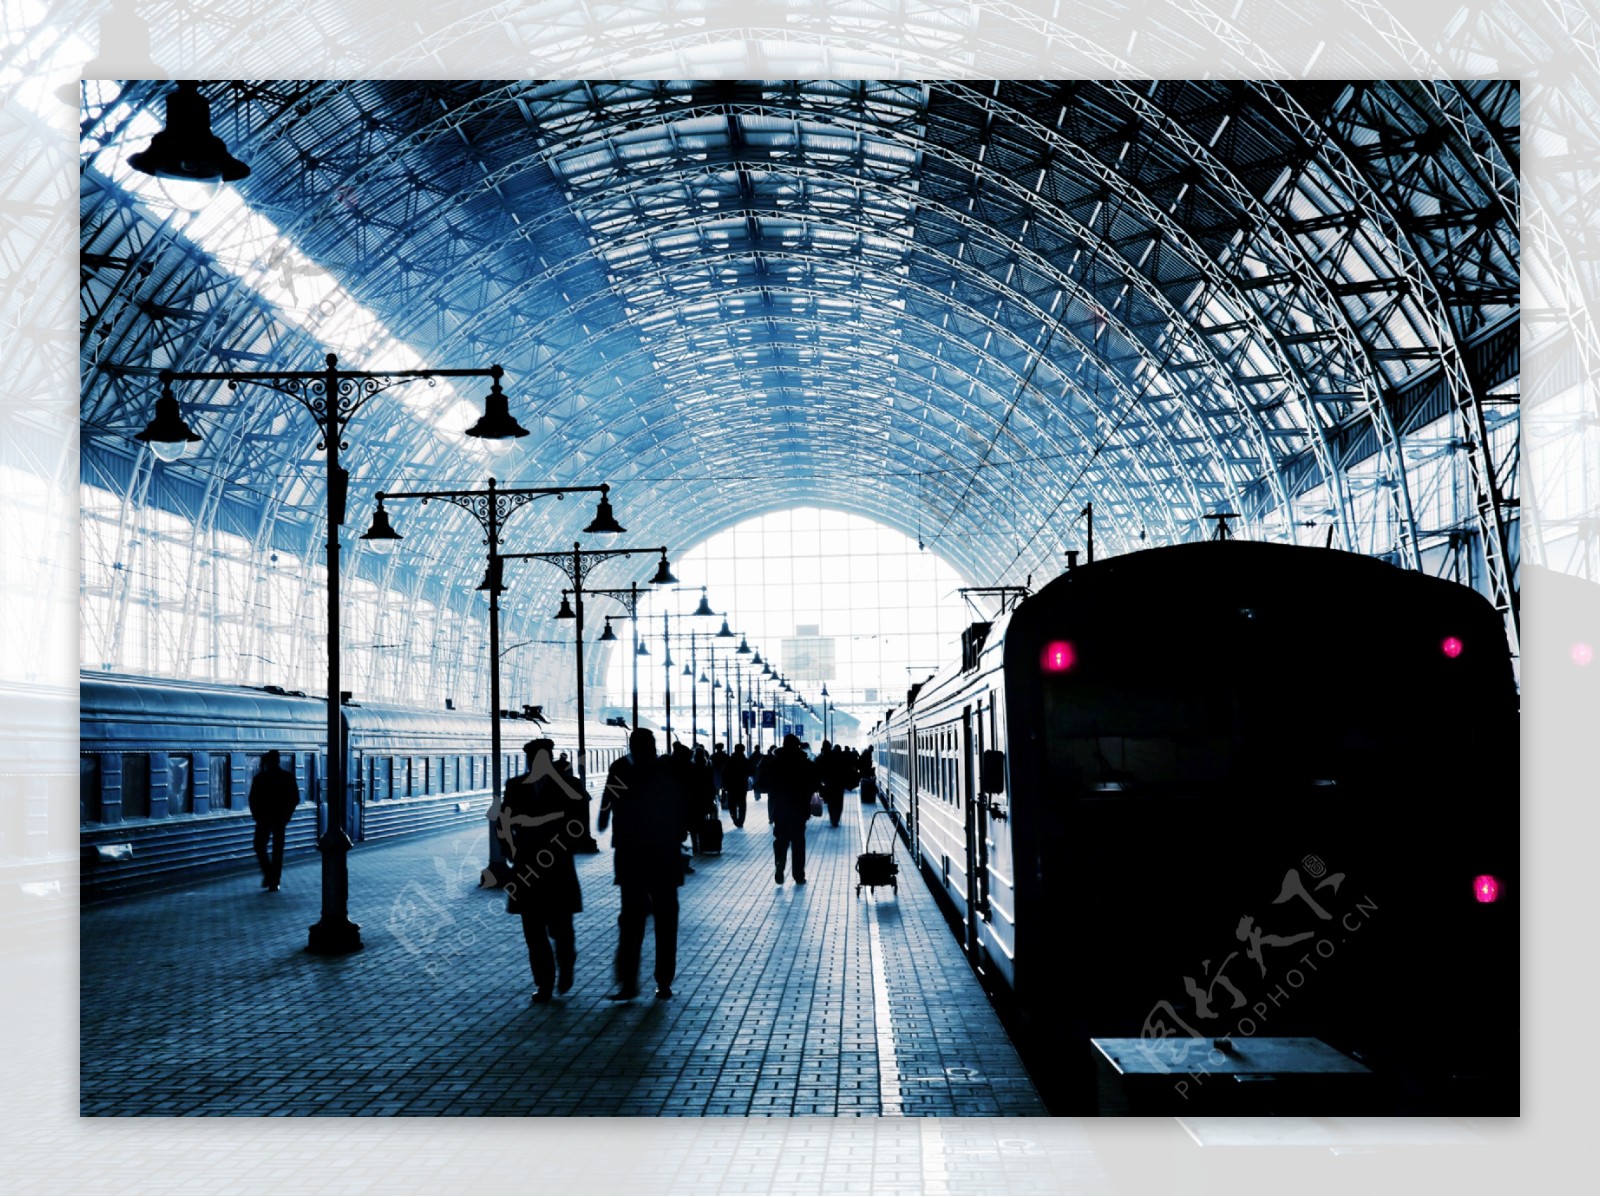 站台旁的旅客与火车图片